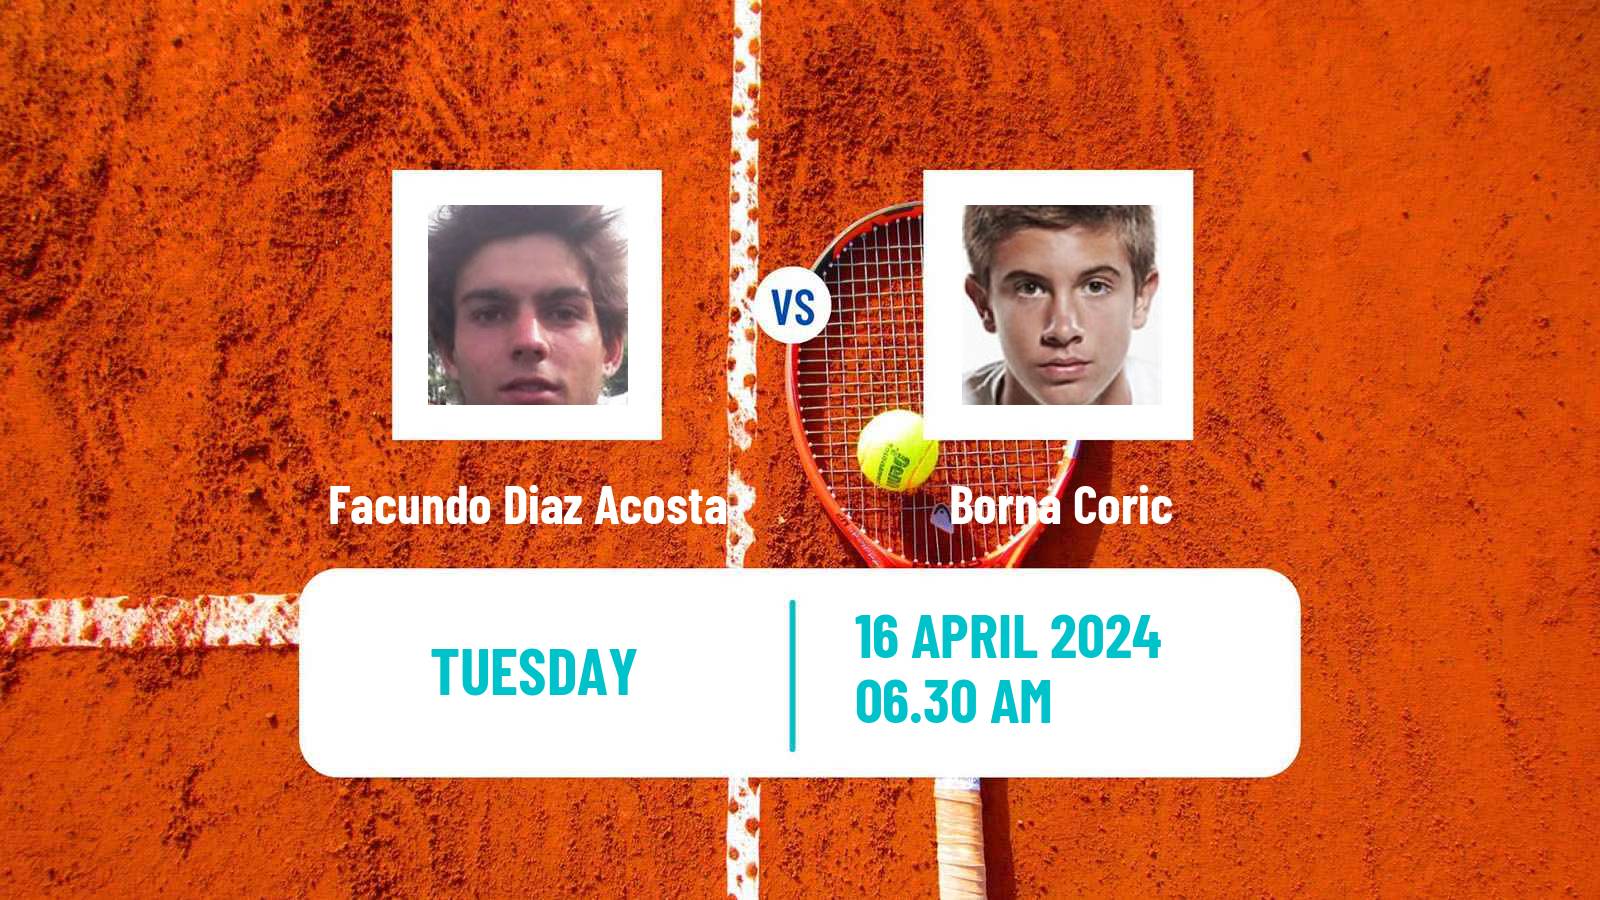 Tennis ATP Barcelona Facundo Diaz Acosta - Borna Coric